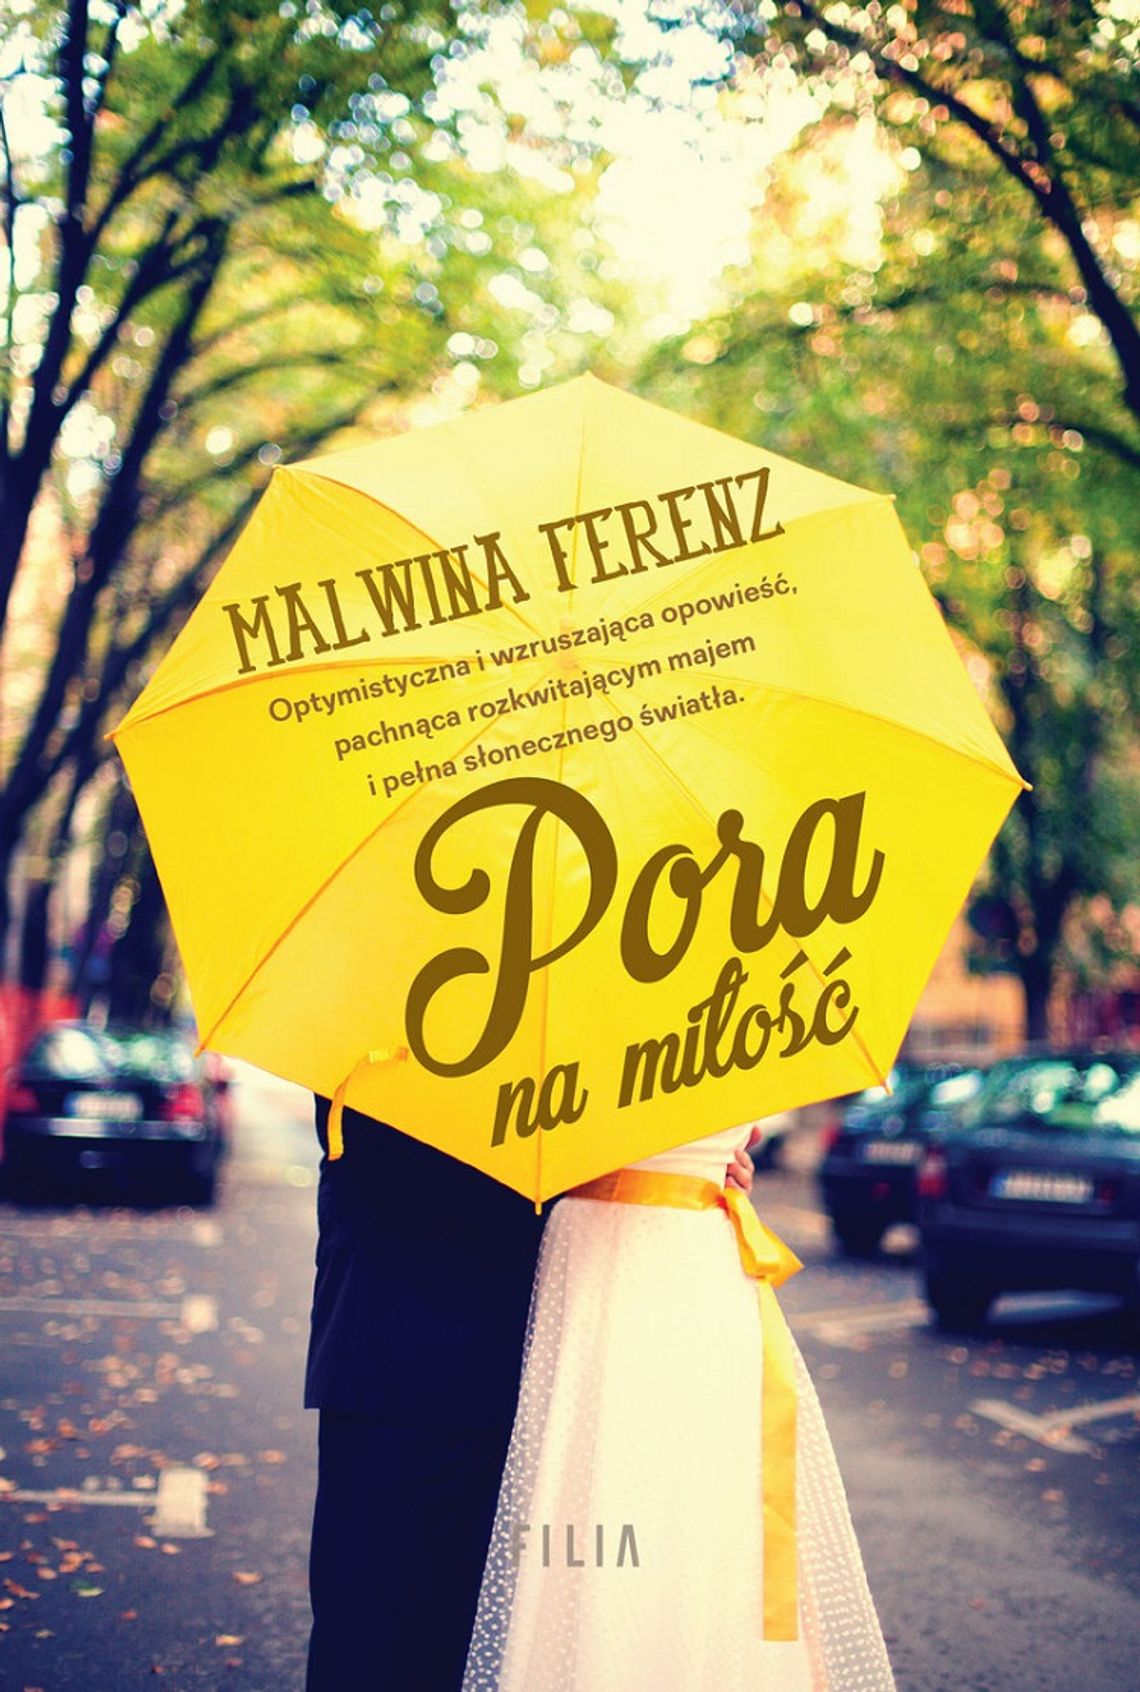 Malwina Ferenz -  "Pora na miłość; wyd. FILIA